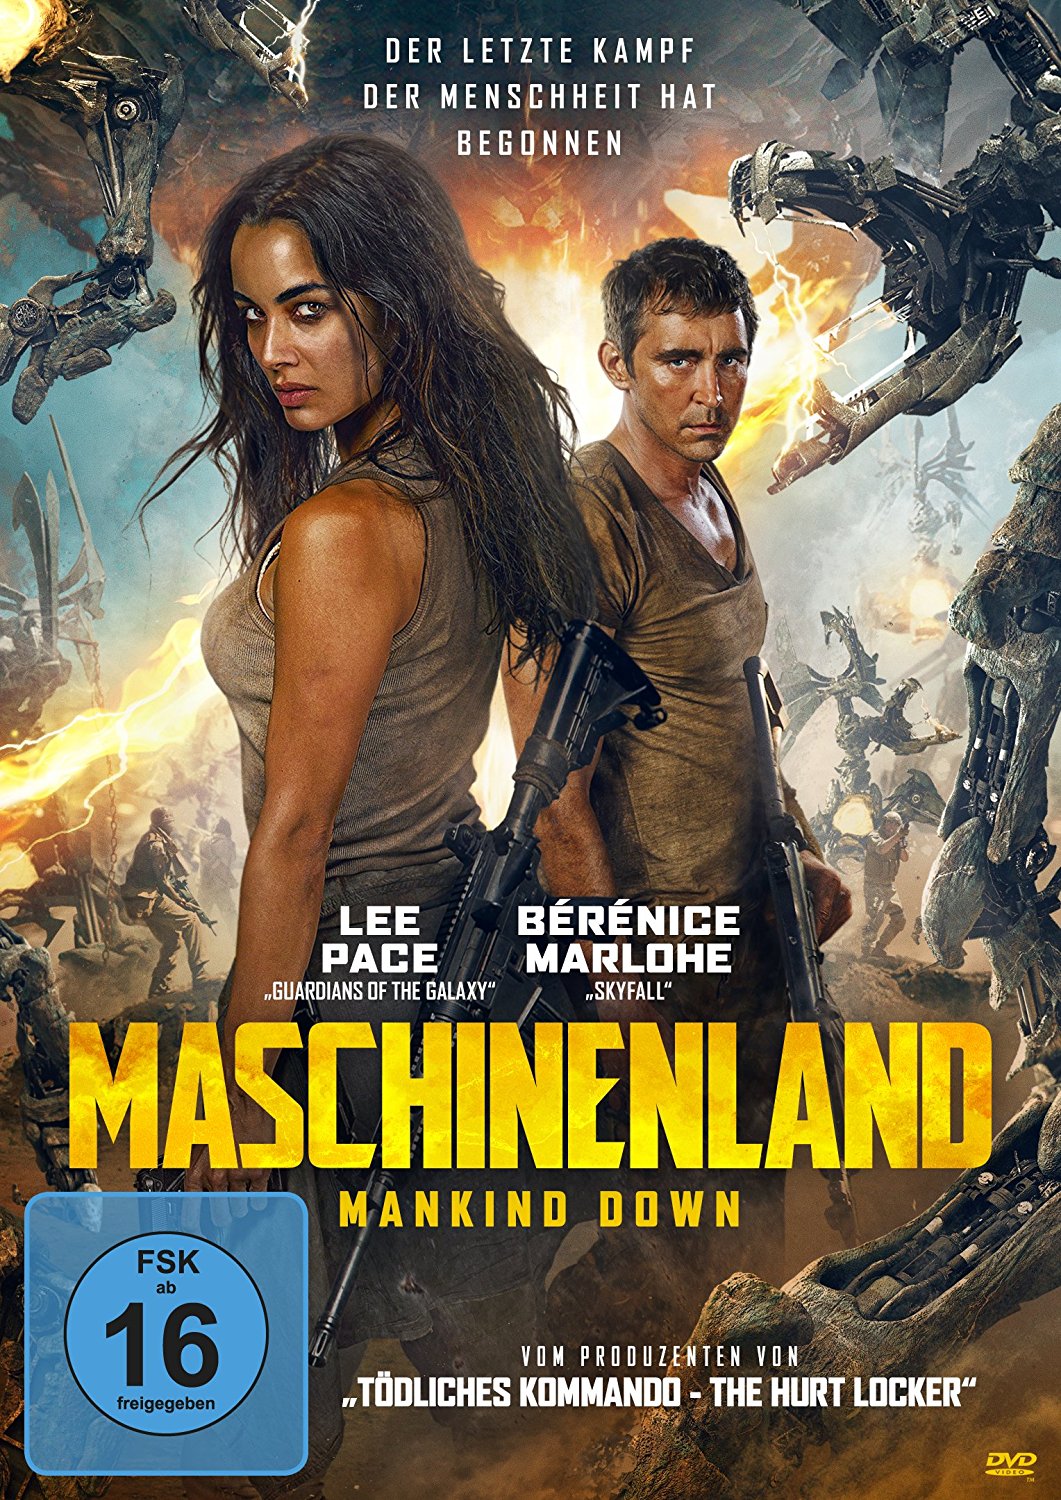 Maschinenland Mankind Down Film 2017 FILMSTARTS.de